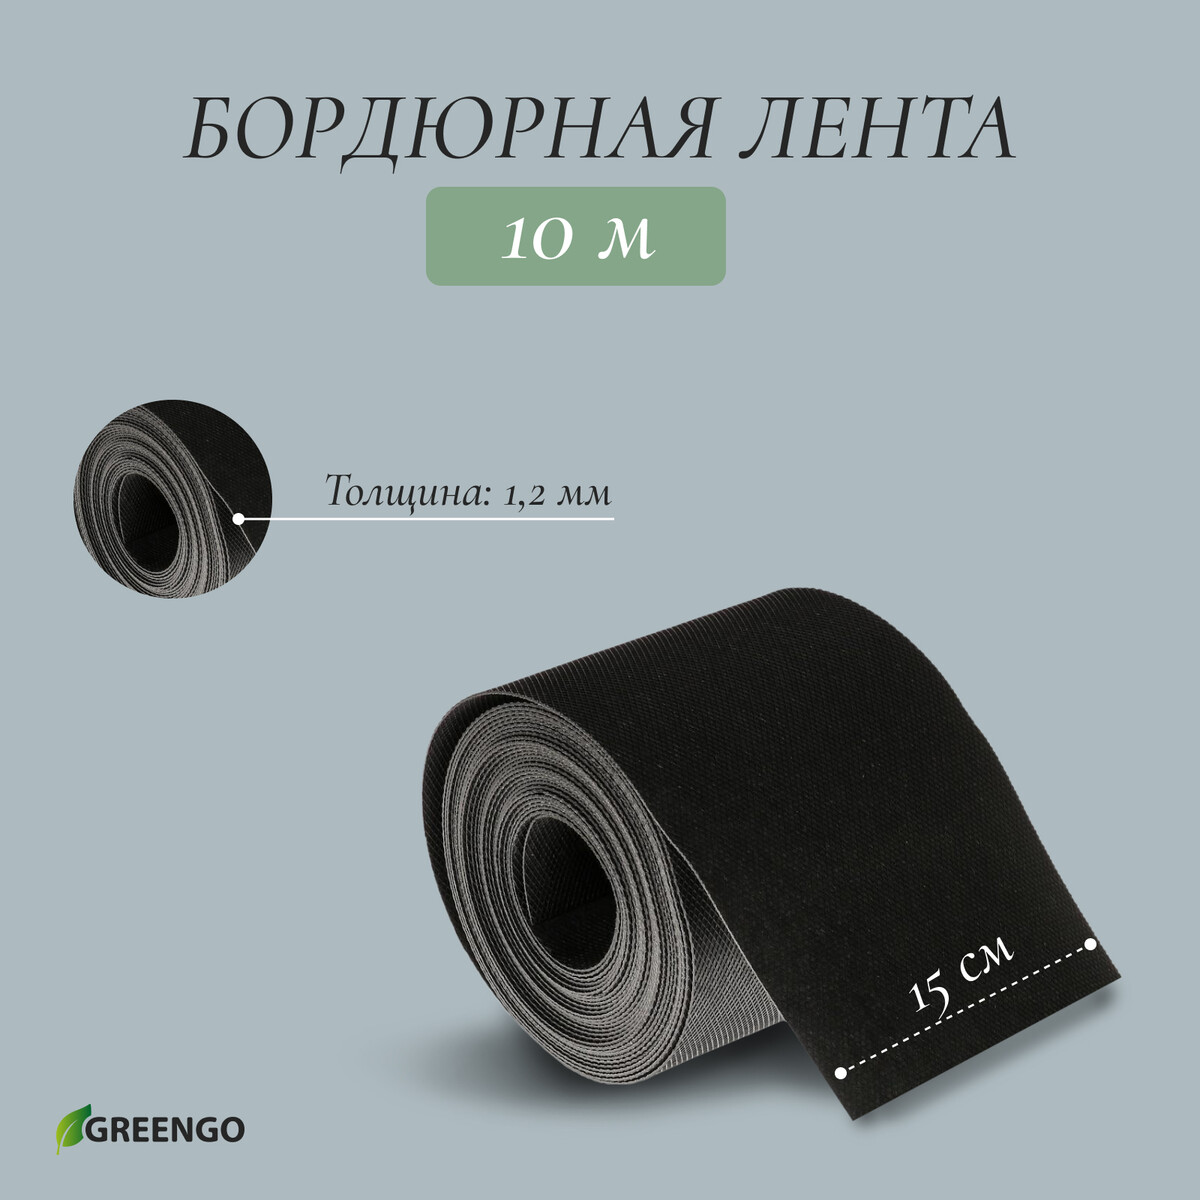 Лента бордюрная, 0.15 × 10 м, толщина 1.2 мм, пластиковая, черная, greengo лента бордюрная 0 3 × 10 м толщина 1 2 мм пластиковая зеленая greengo